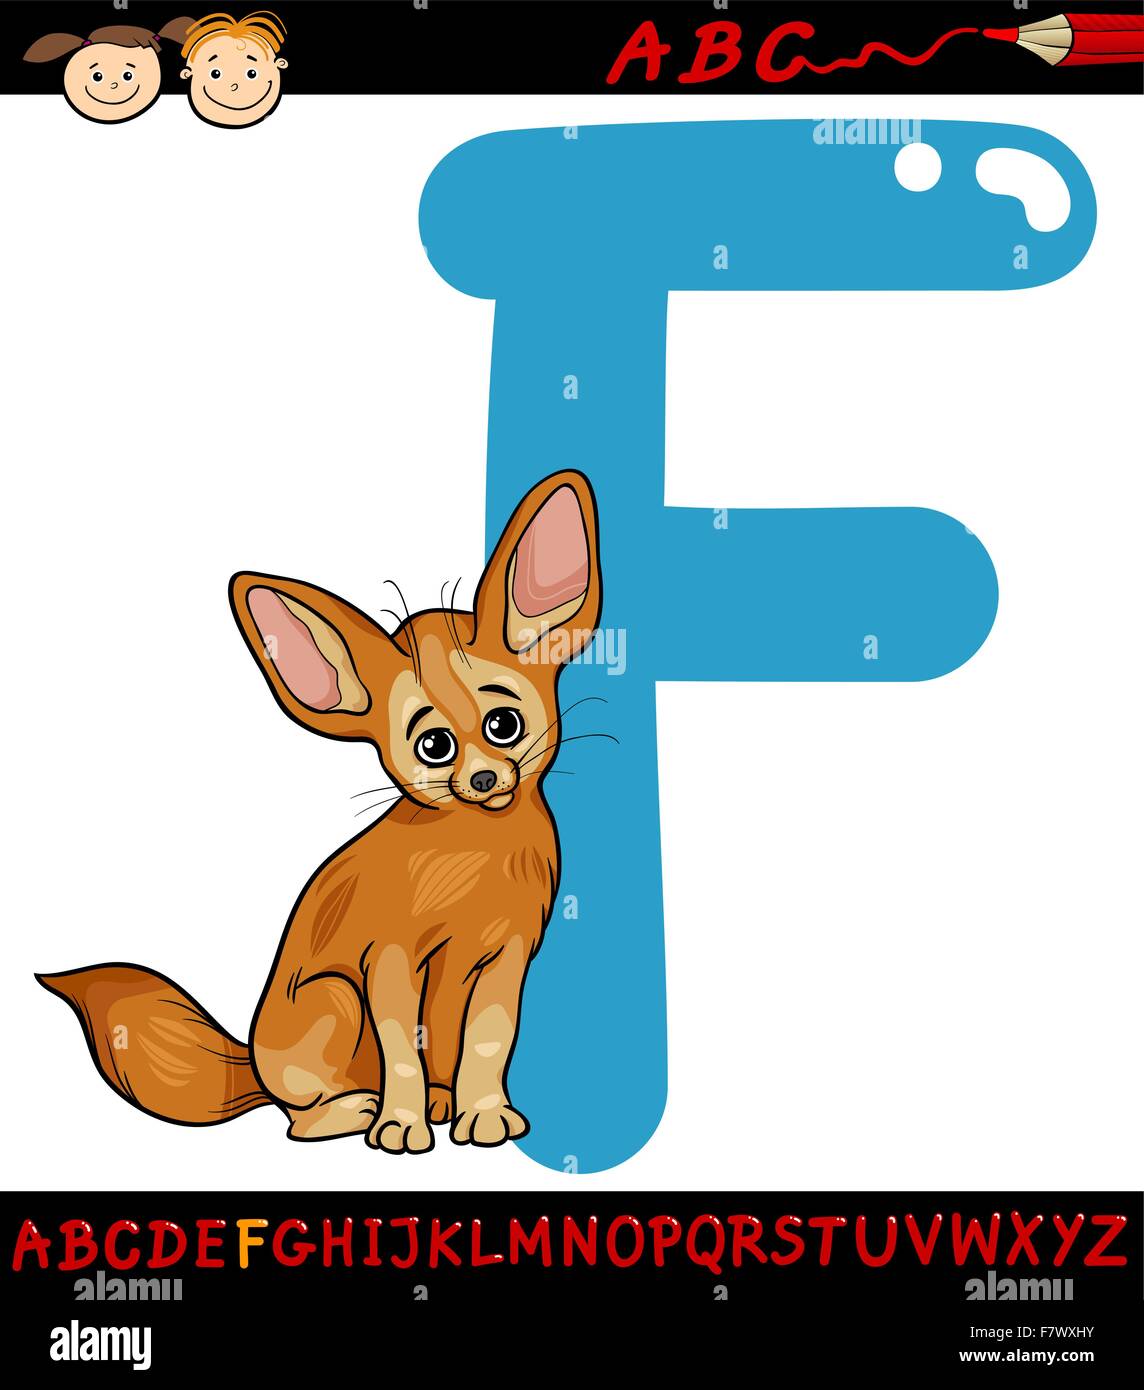 letter f for fennec fox cartoon illustration Stock Vector